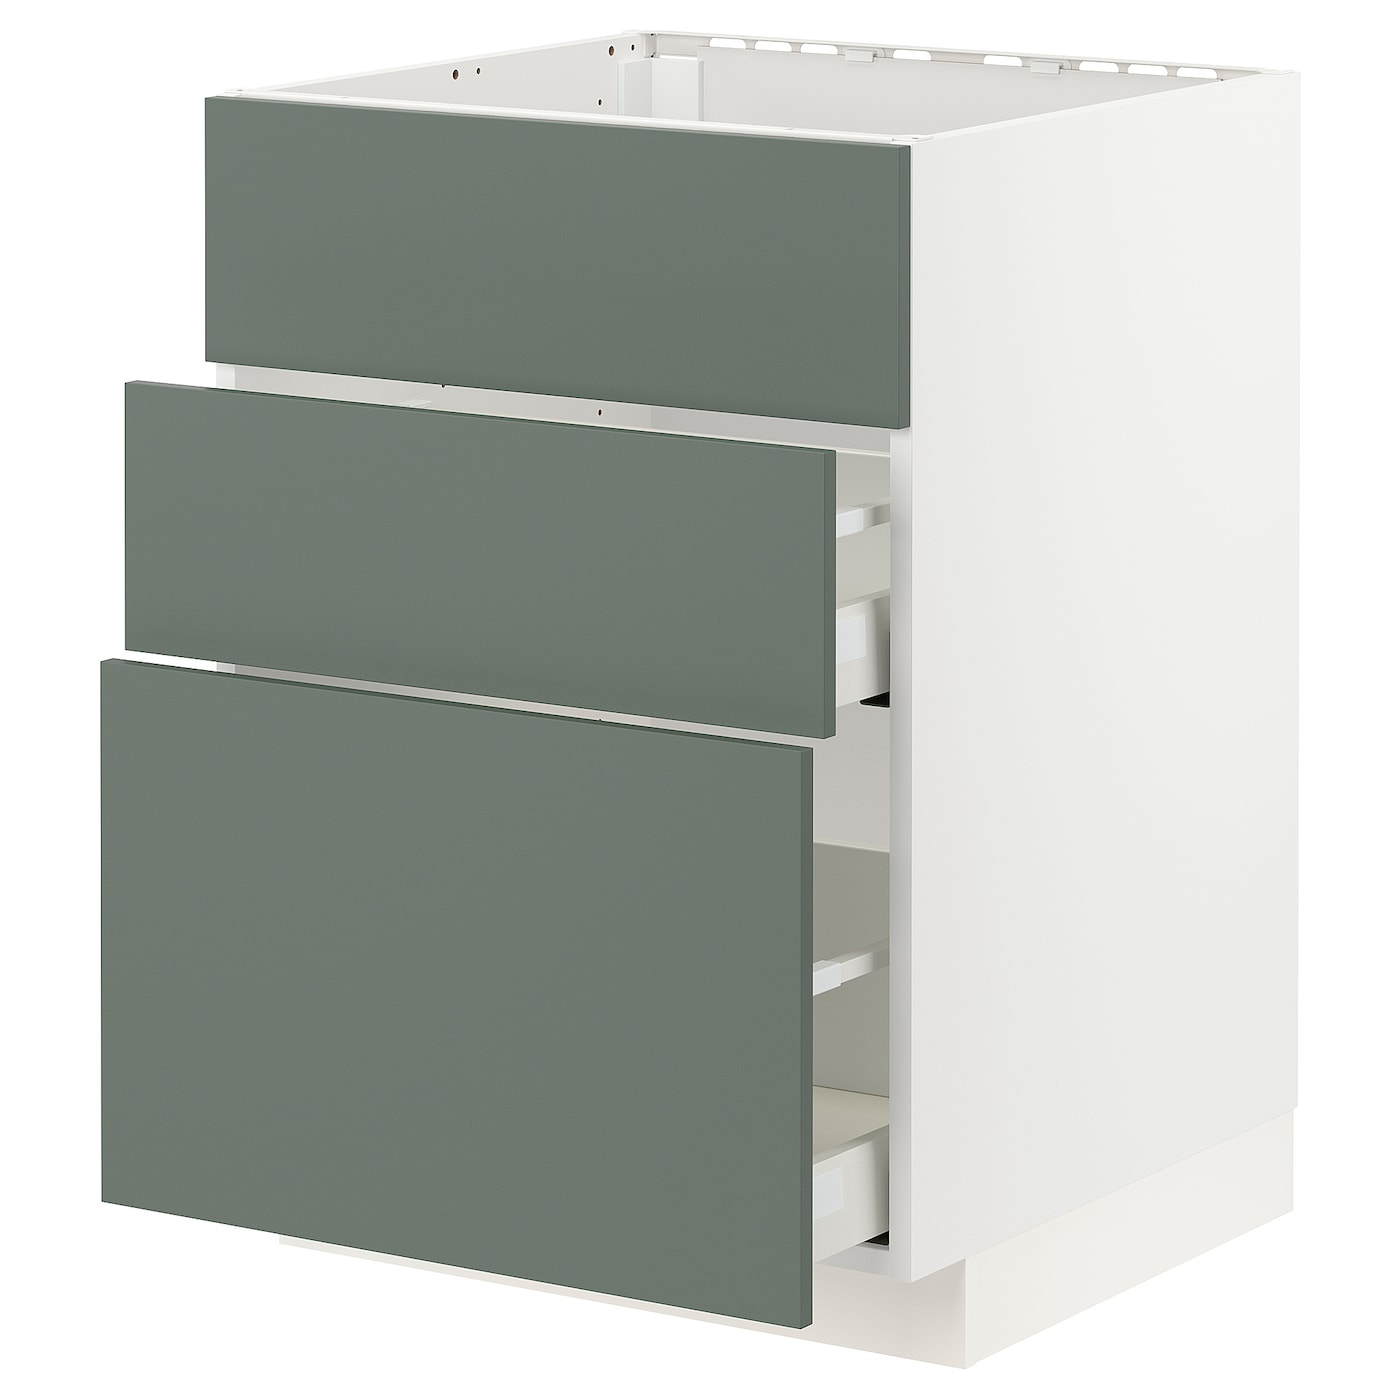 Напольный кухонный шкаф  - IKEA METOD MAXIMERA, 88x62x60см, белый/серо-зеленый, МЕТОД МАКСИМЕРА ИКЕА